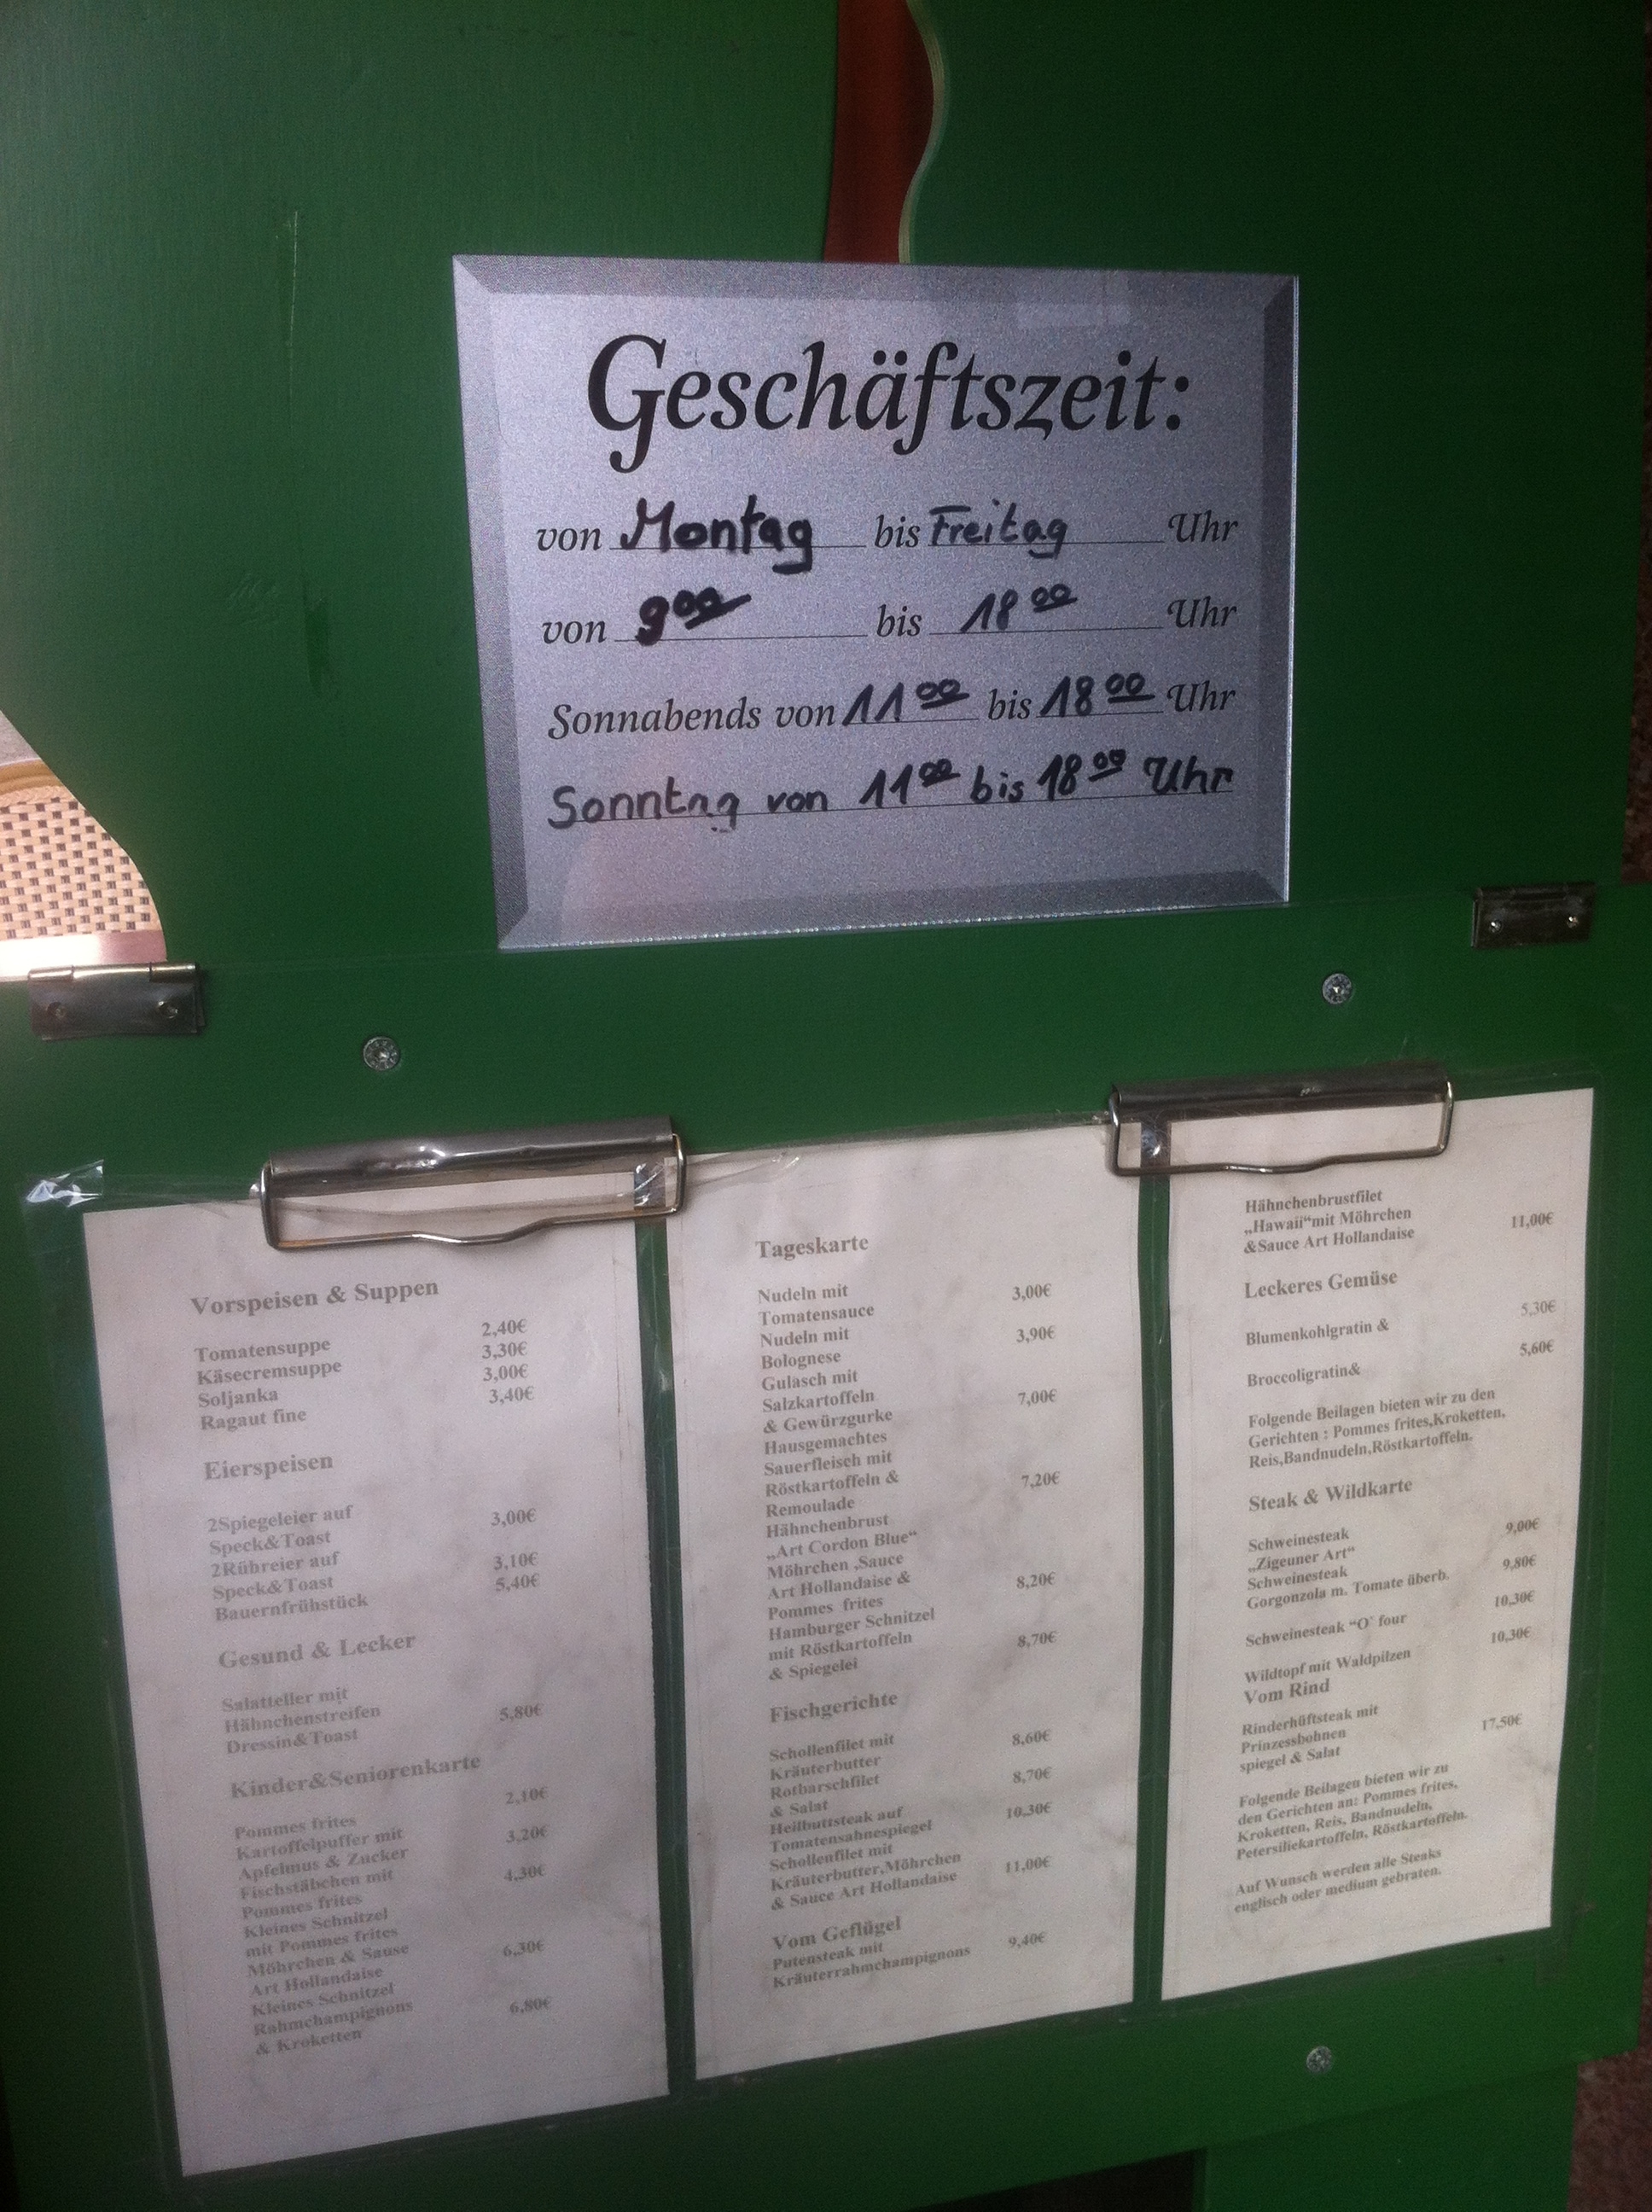 Zu den Askaniern - Eis-Café und Restaurant in Friedland Mecklenburg